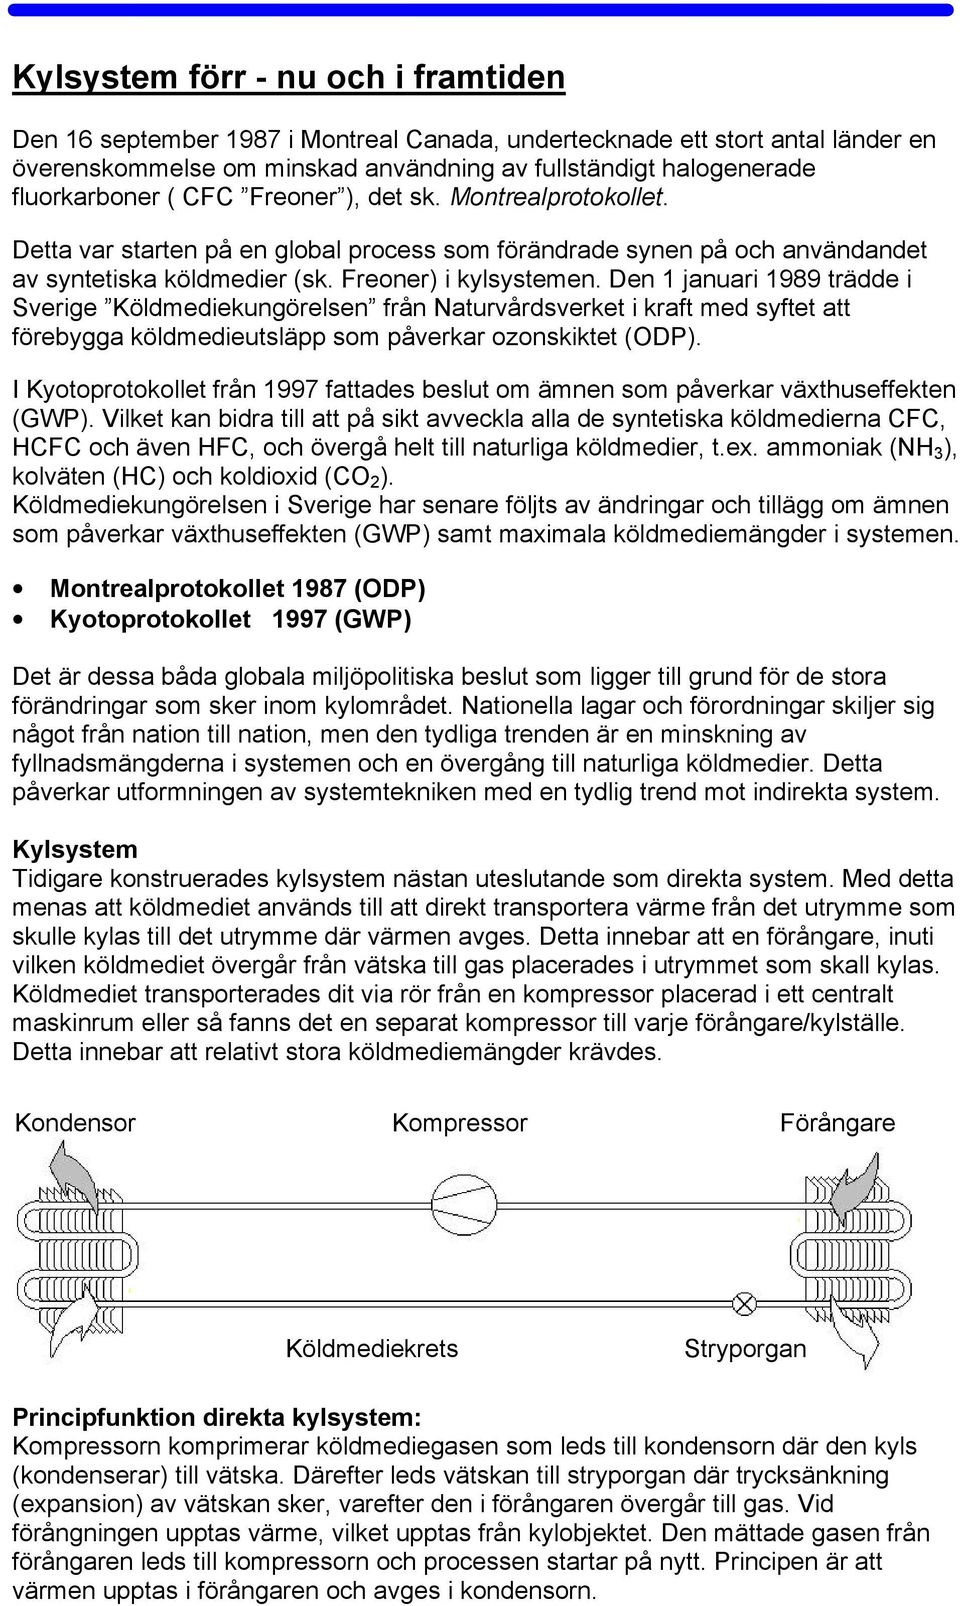 Den 1 januari 1989 trädde i Sverige Köldmediekungörelsen från Naturvårdsverket i kraft med syftet att förebygga köldmedieutsläpp som påverkar ozonskiktet (ODP).